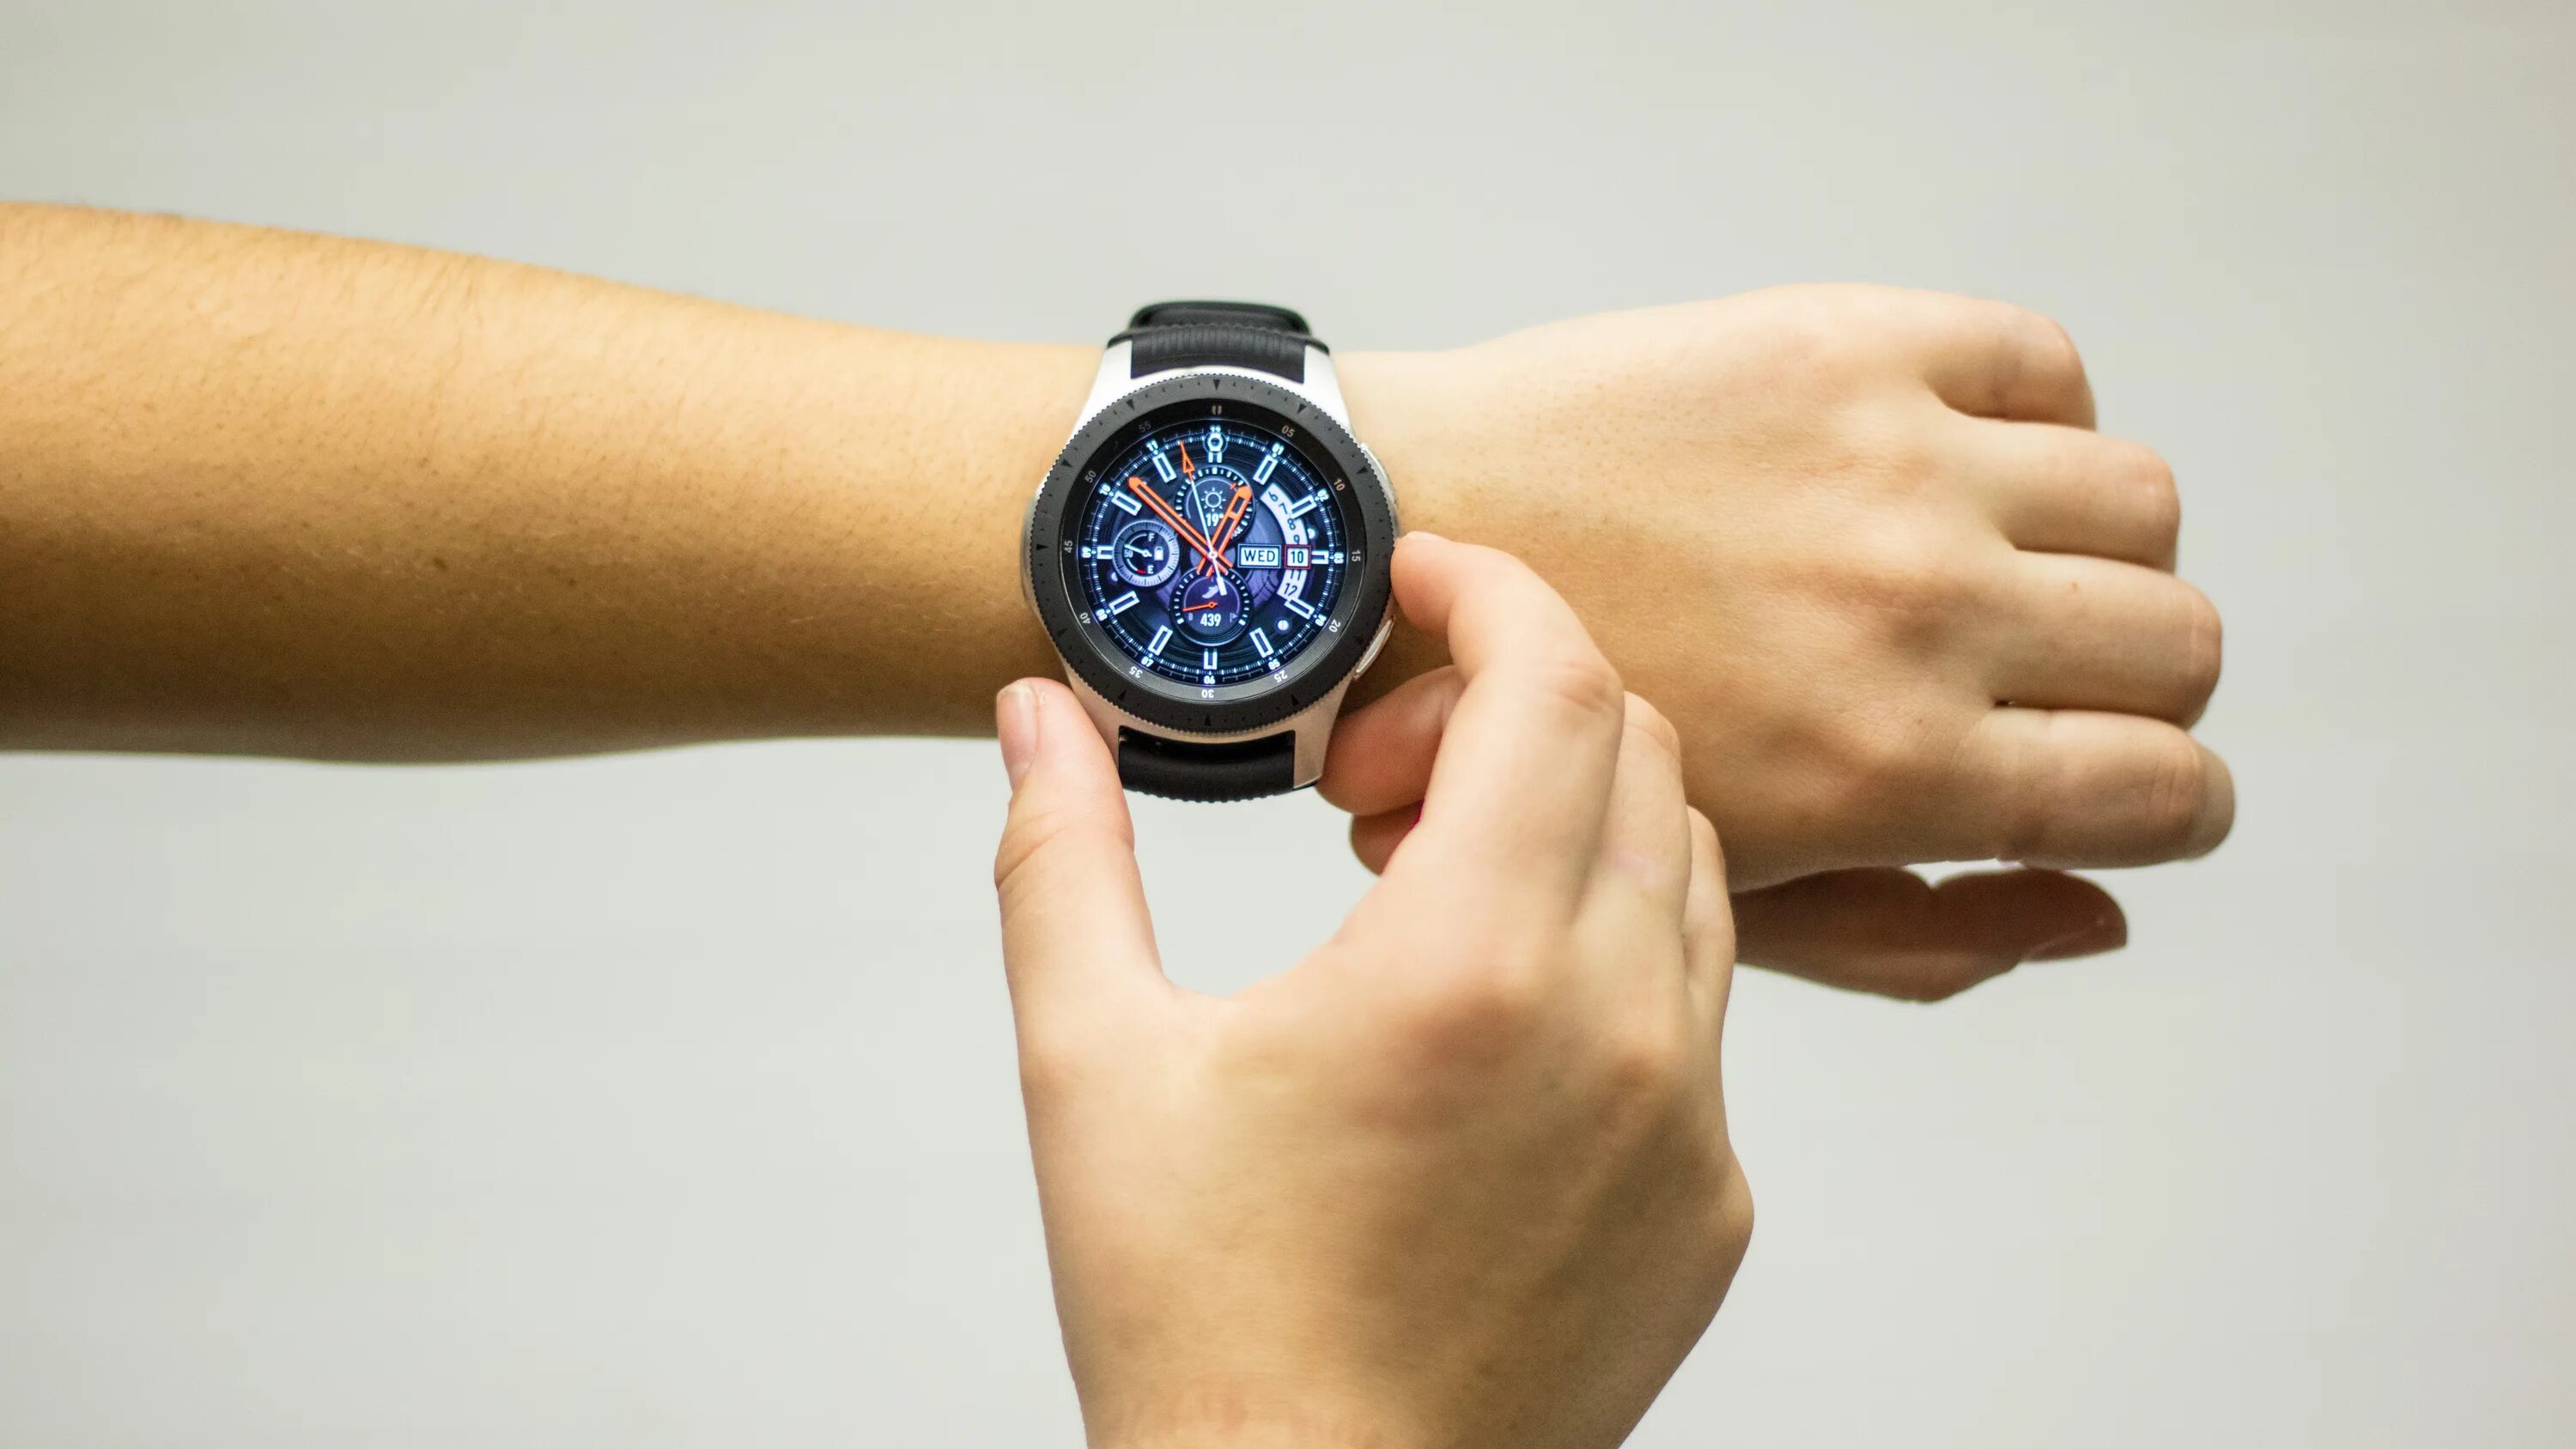 Samsung Galaxy watch 4 46. Samsung Galaxy watch 4 46mm. Samsung Galaxy watch 46мм. Galaxy watch 4 Classic 46 мм.